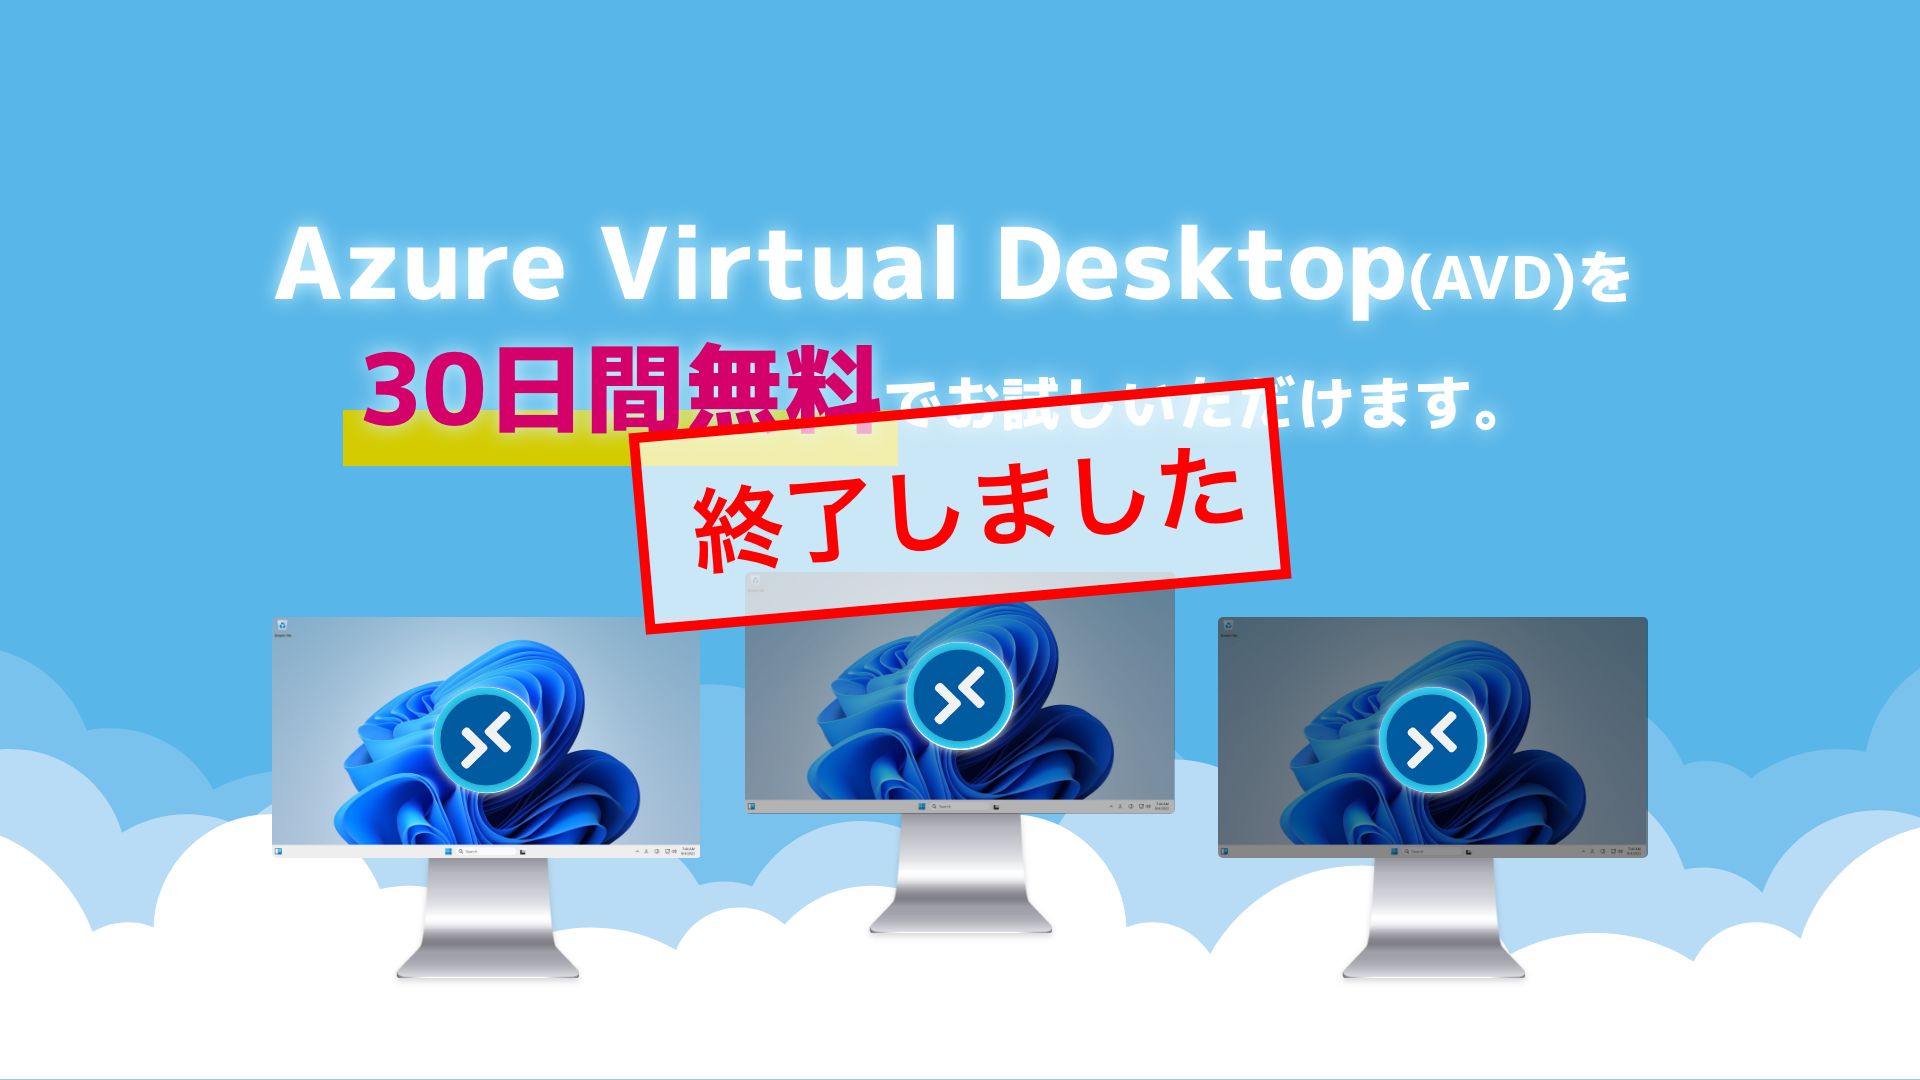 Azure Virtual Desktop(AVD)を30日間無料でお試しいただけます。